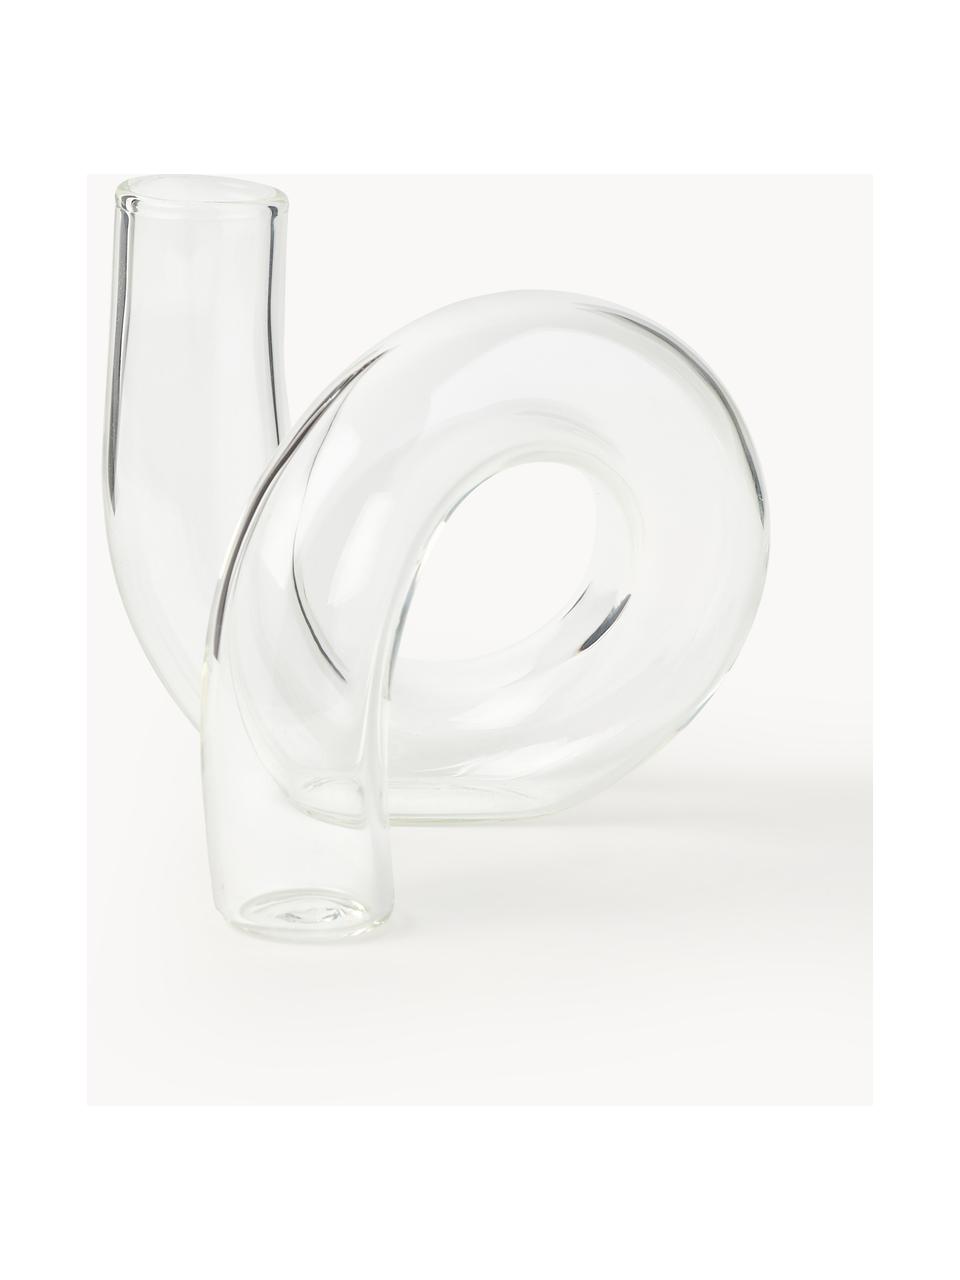 Ręcznie wykonany wazon Zaida, W 12 cm, Szkło, Transparentny, S 11 x W 12 cm